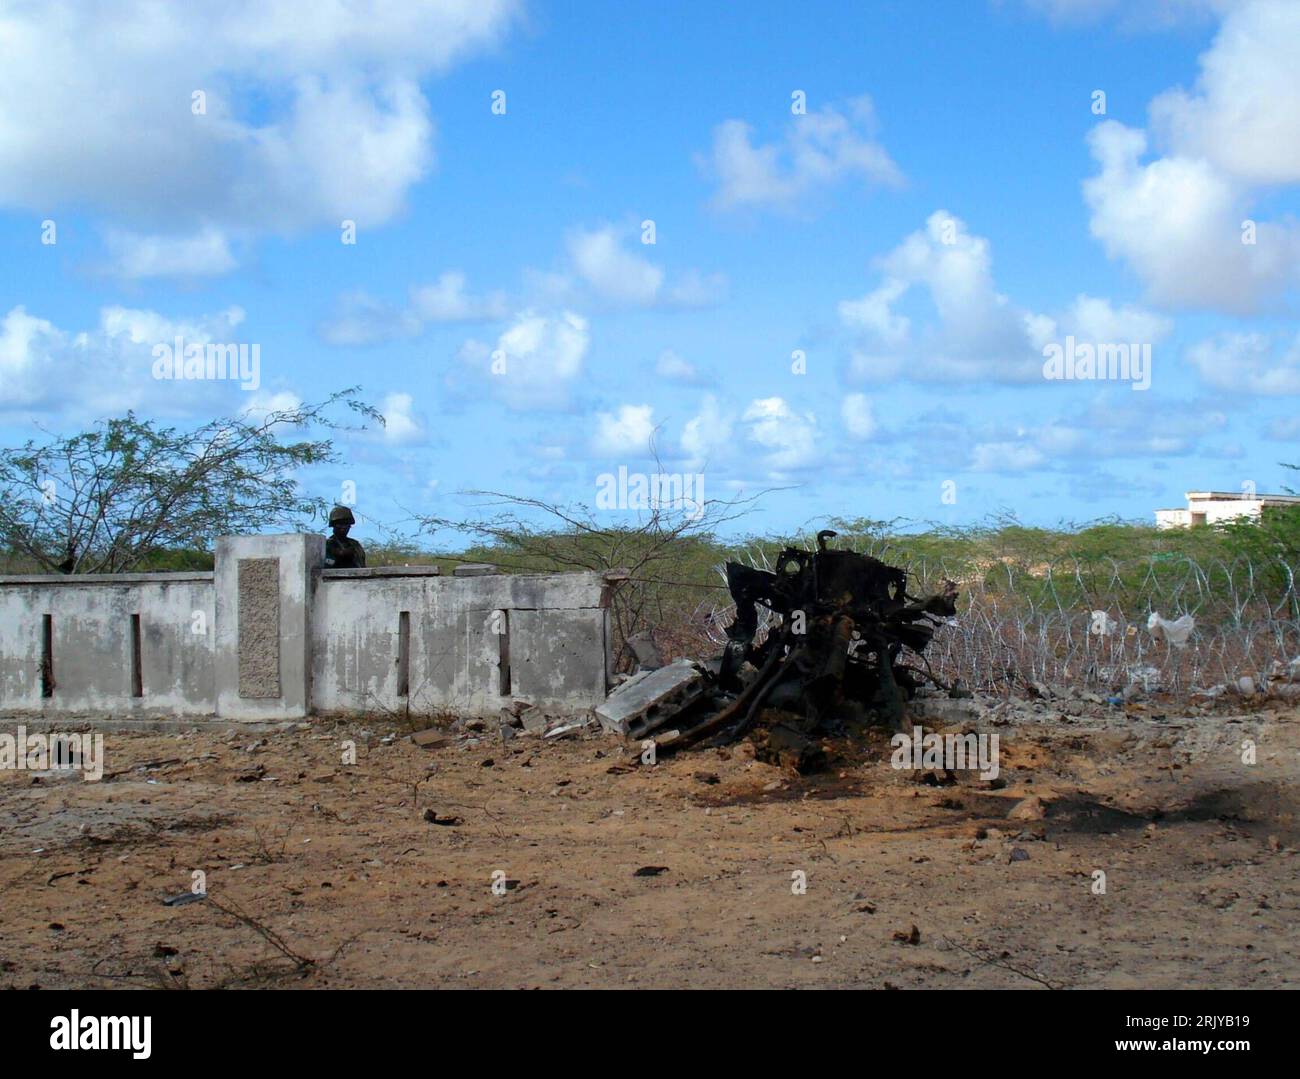 Bildnummer: 52492286  Datum: 09.04.2008  Copyright: imago/Xinhua Wrack eines verbrannten Autos - Überbleibsel eines Selbstmordanschlags auf einen Stützpunkt der Friedenstruppe der Afrikanischen Union - Mogadishu PUBLICATIONxNOTxINxCHN, Objekte , Landschaft; 2008, Mogadischu, Somalia, premiumd, African Union peacekeeping force, Reste, verbrannt, Selbstmordanschlag, Anschlag; , quer, Kbdig, Totale,  ,  , Afrika o0 Terrorismus Stock Photo